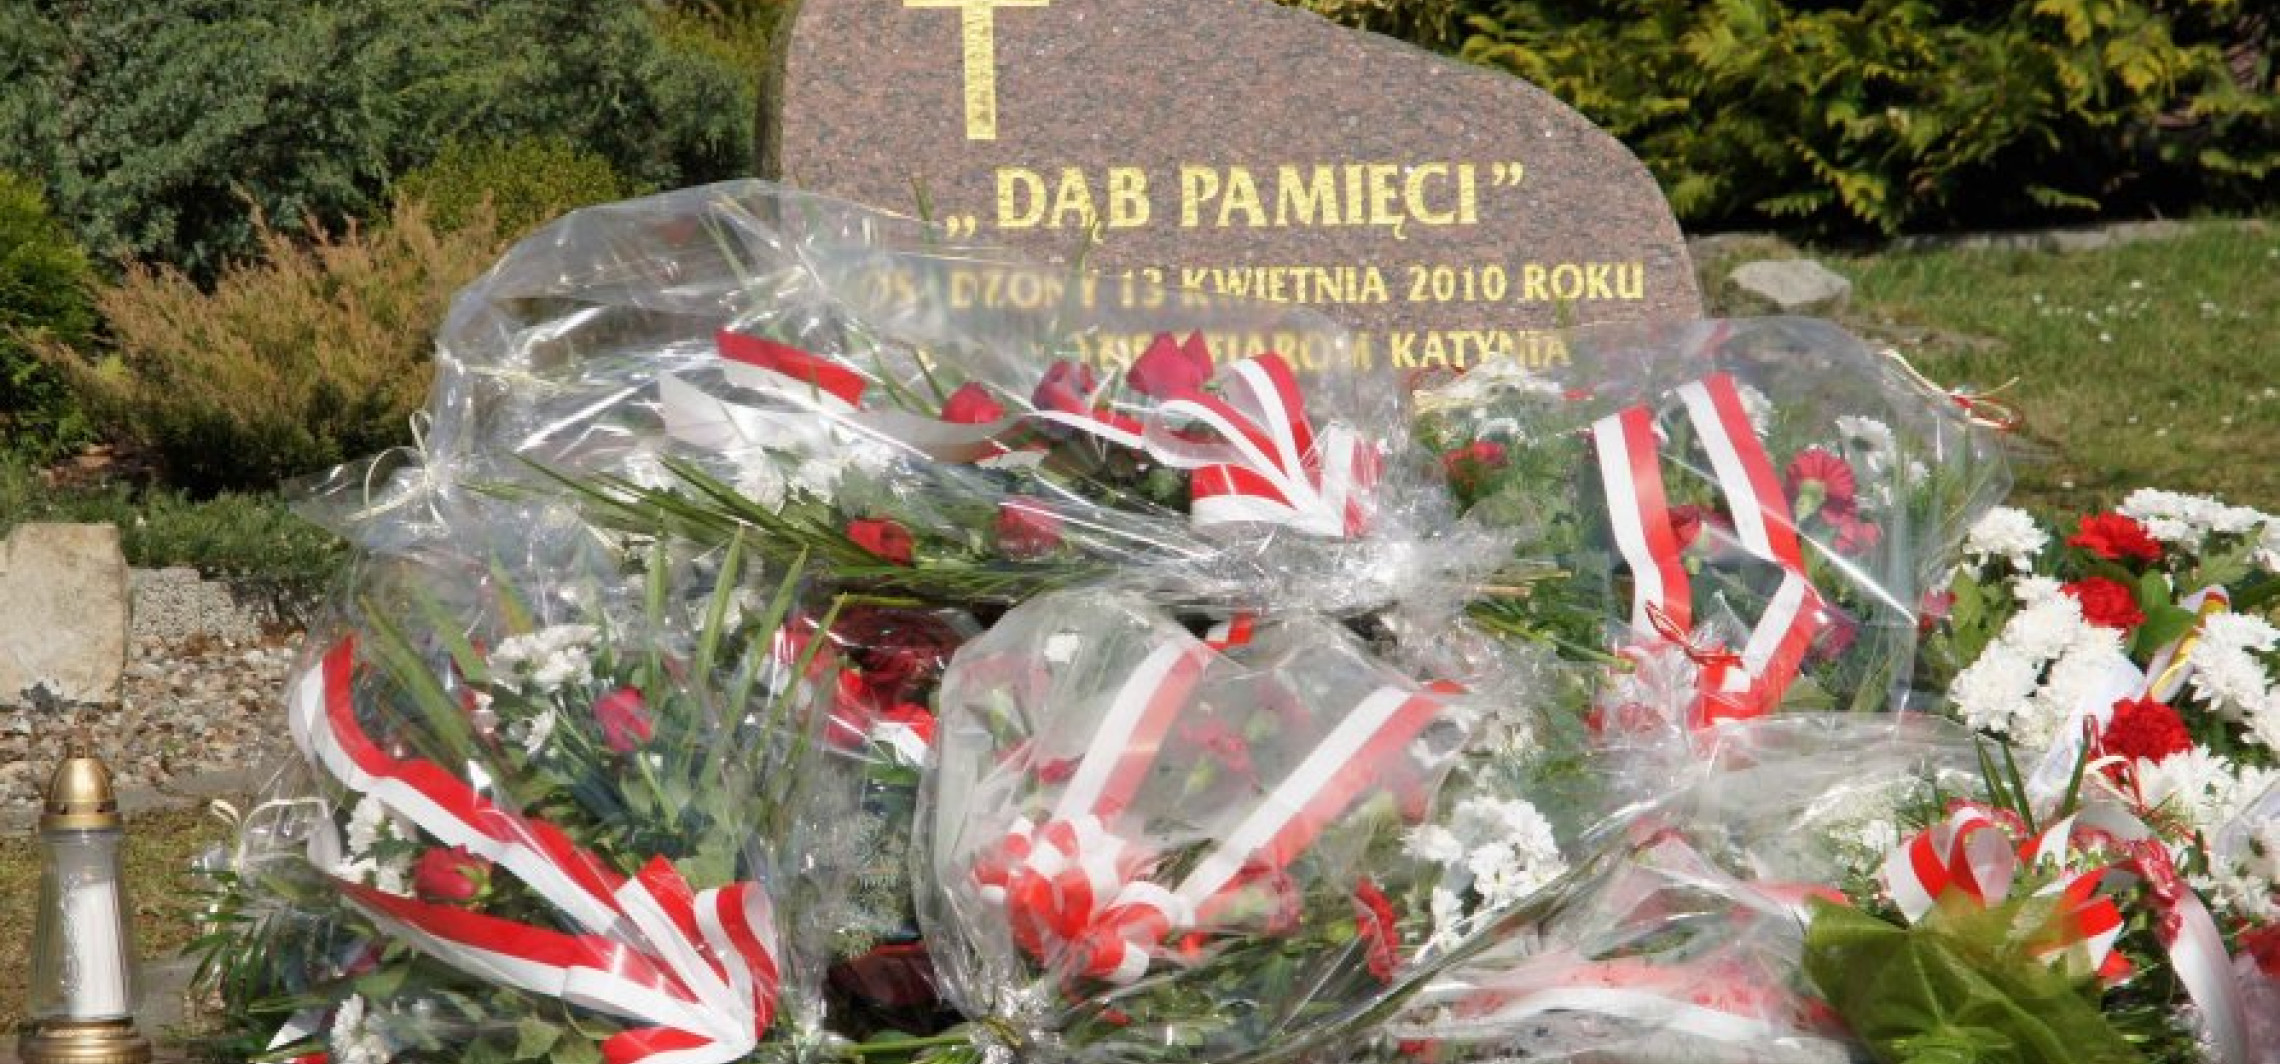 Inowrocław - Oddadzą hołd w 83. rocznicę zbrodni katyńskiej